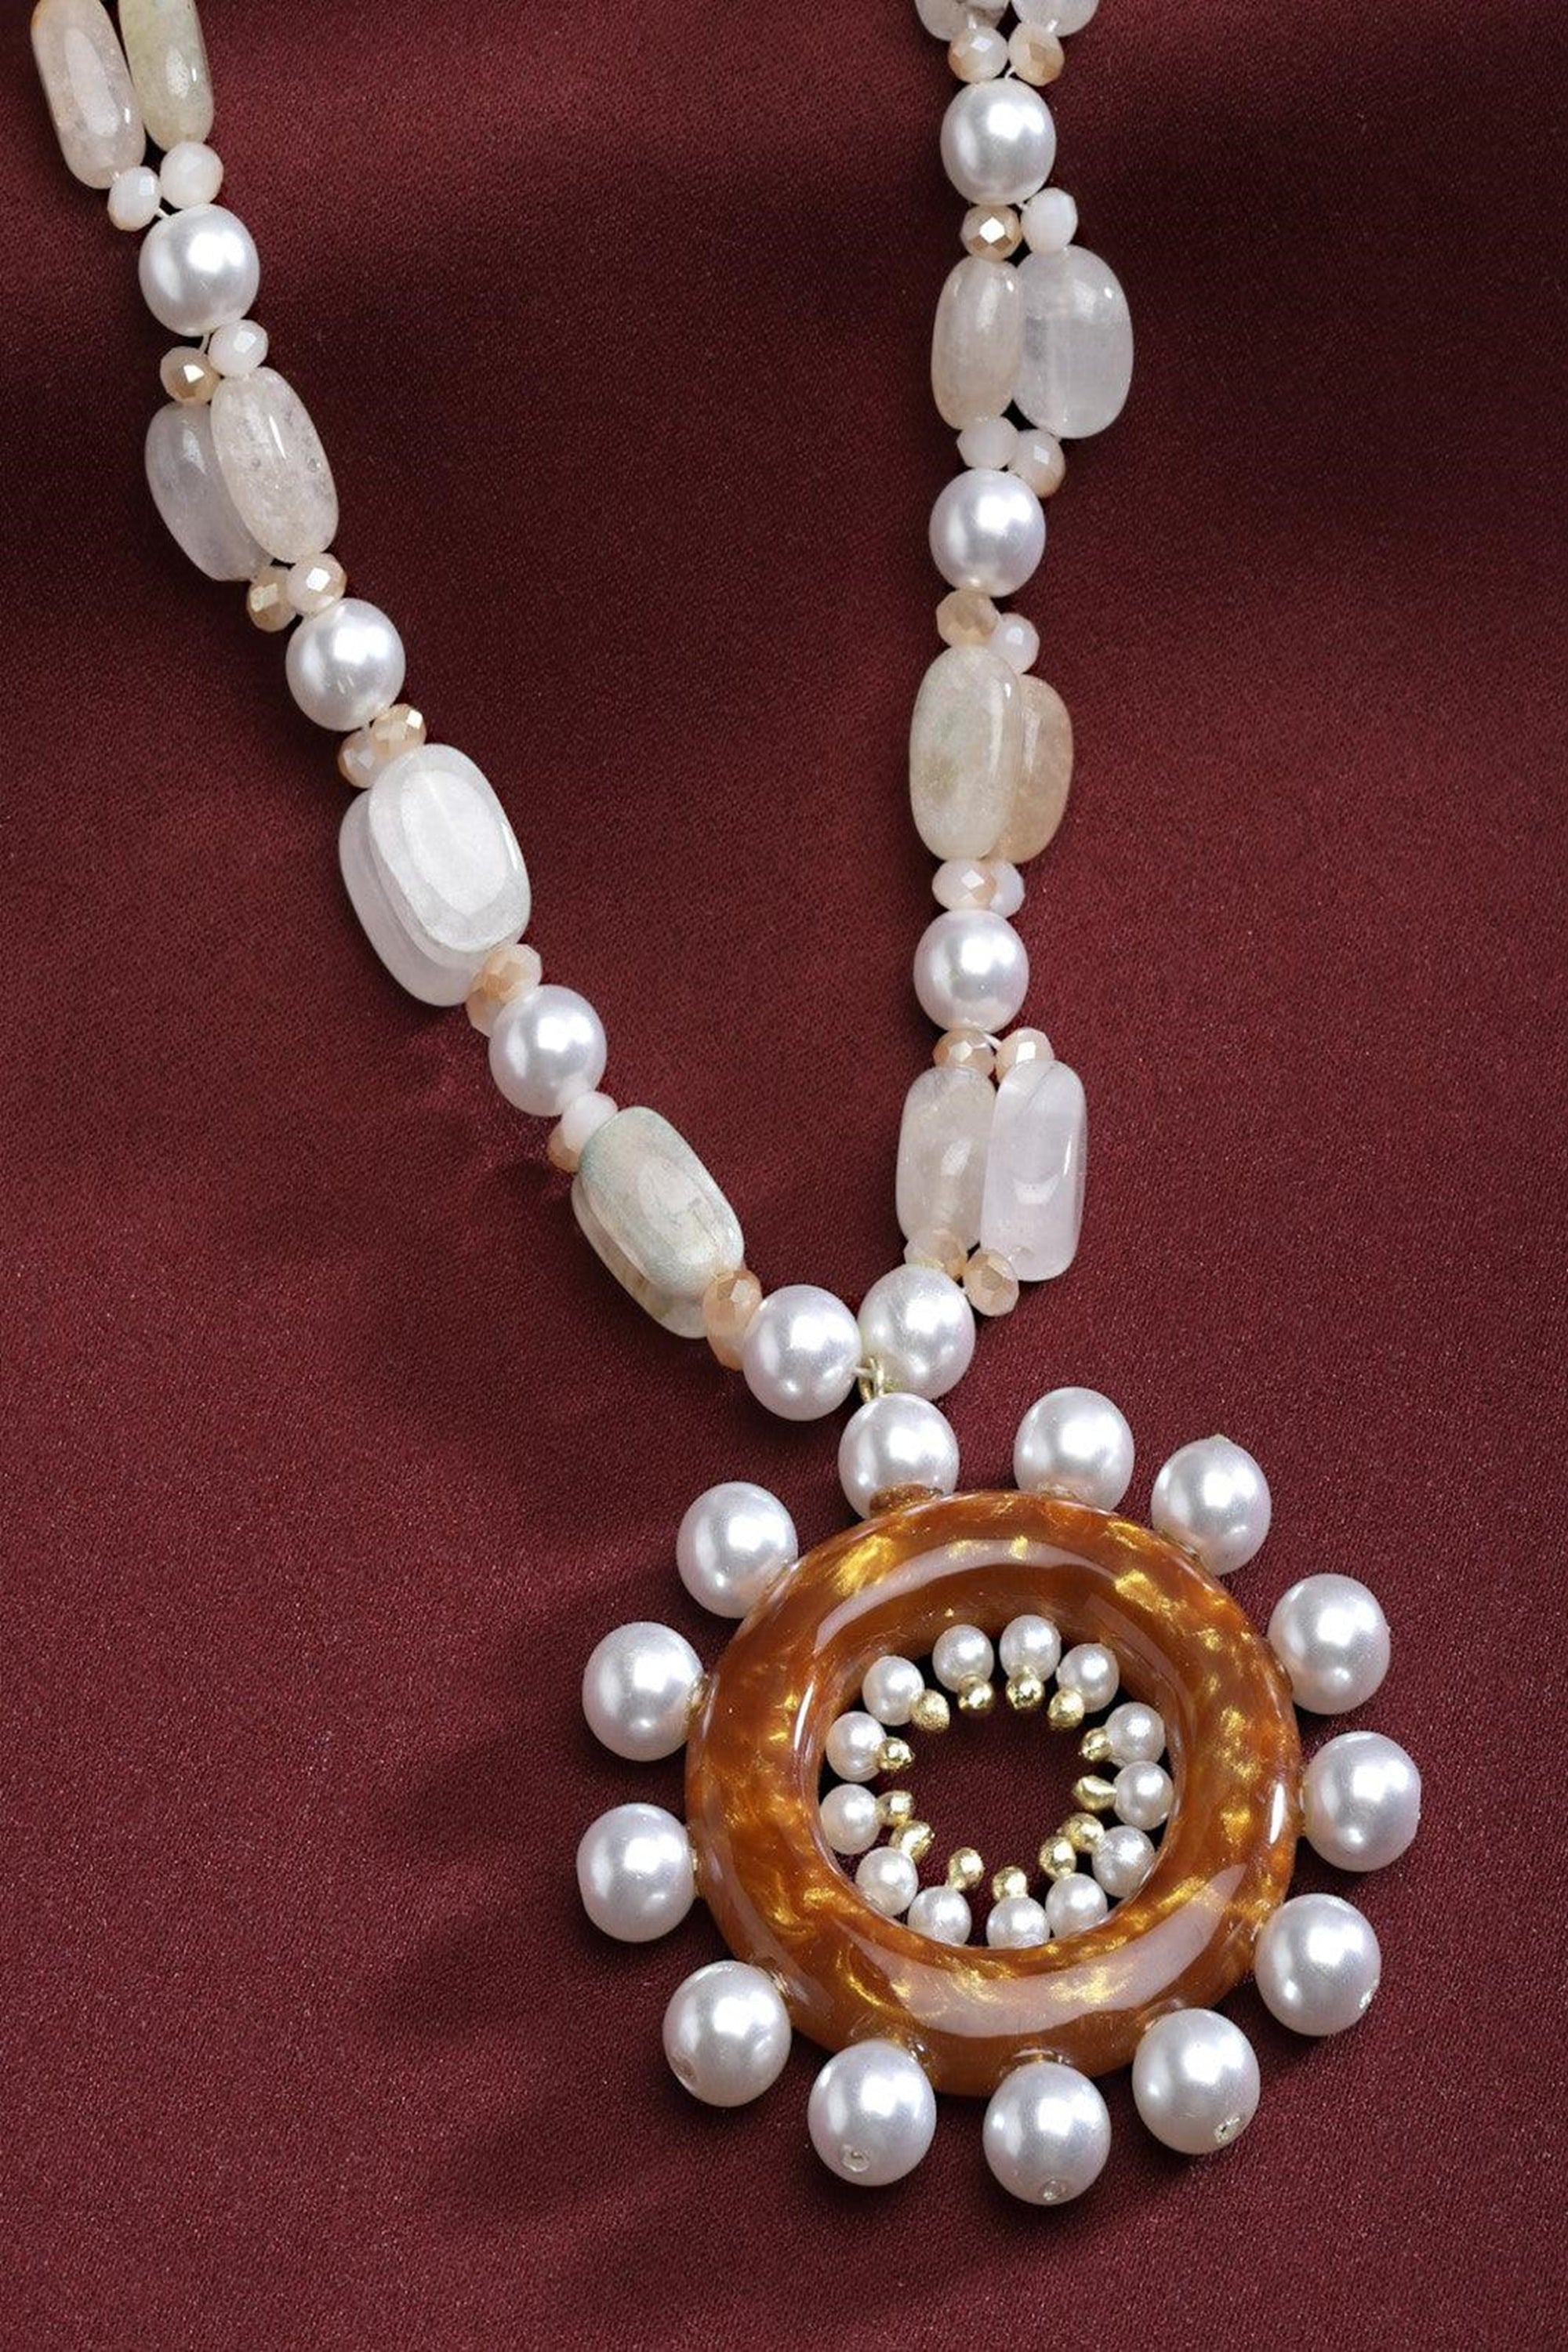 Sunshine Necklace with Semi precious stones 